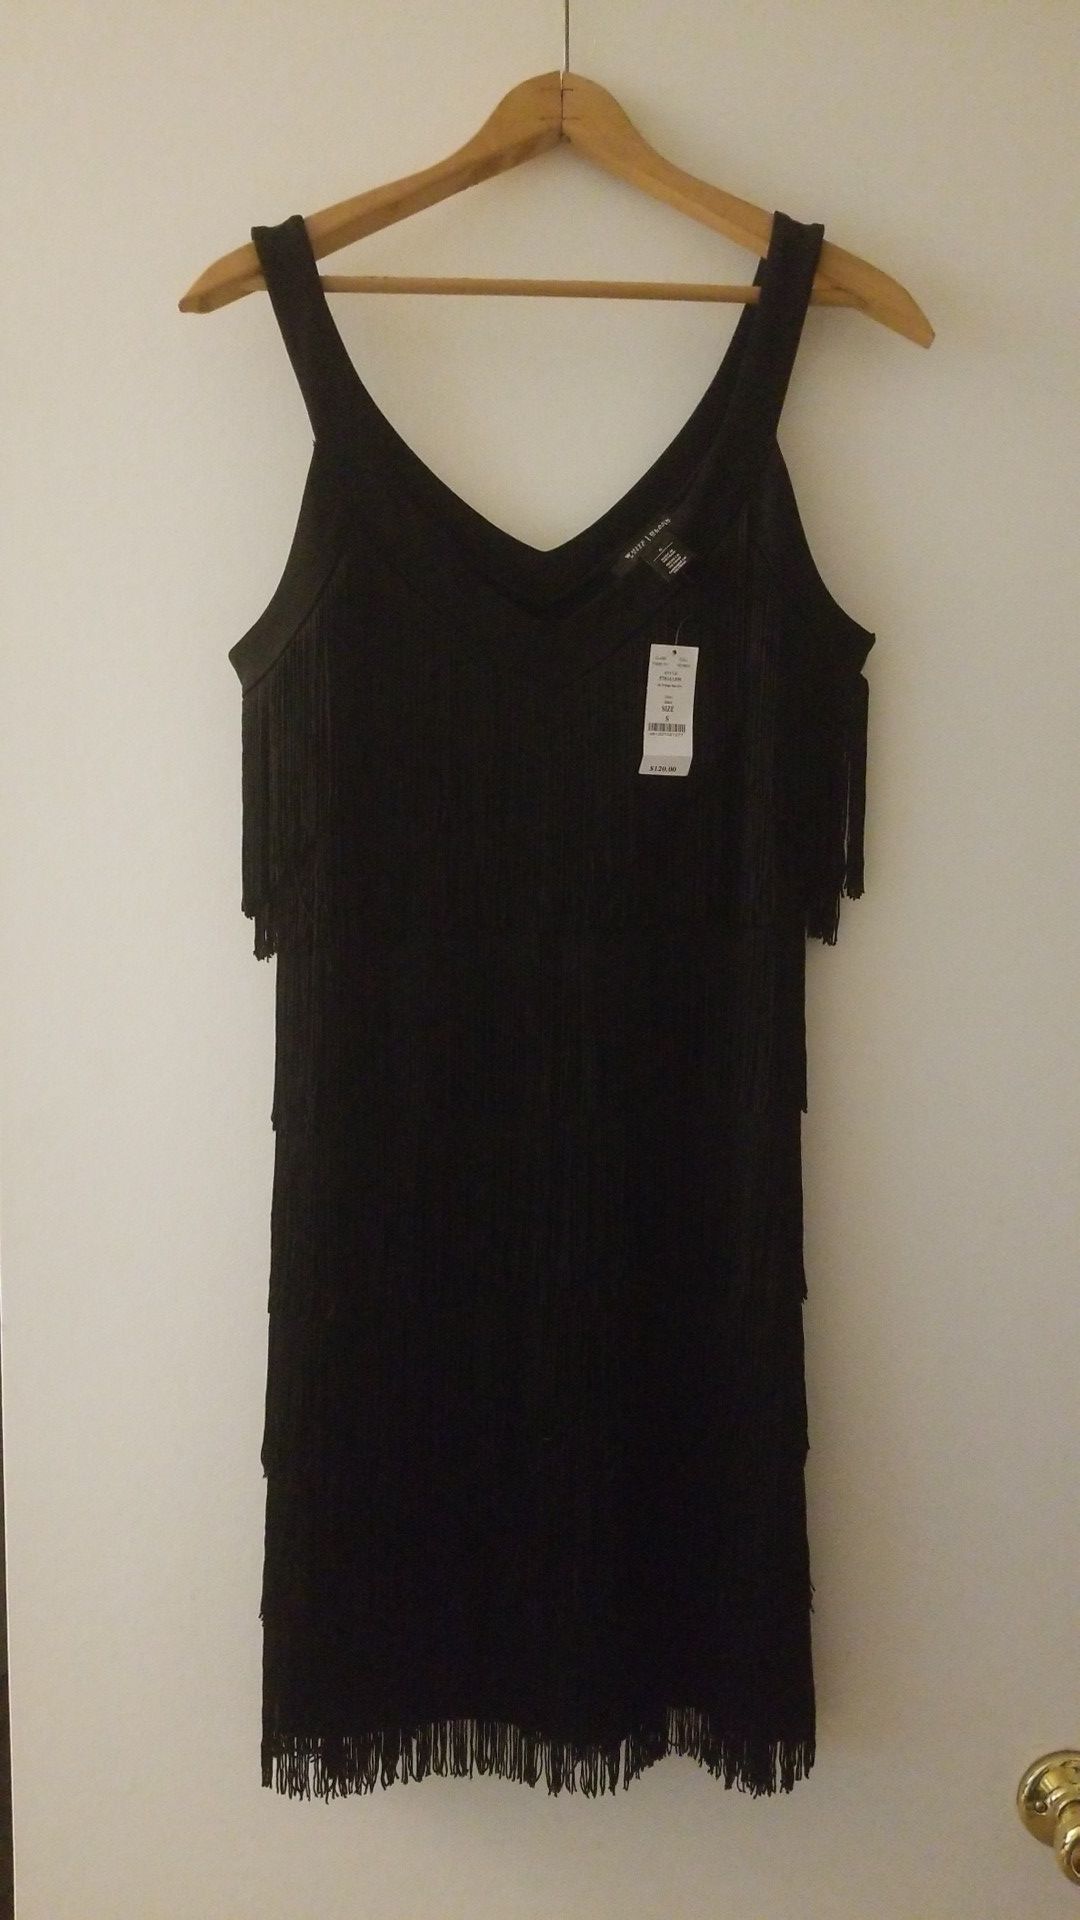 Brand new White House Black Market dress